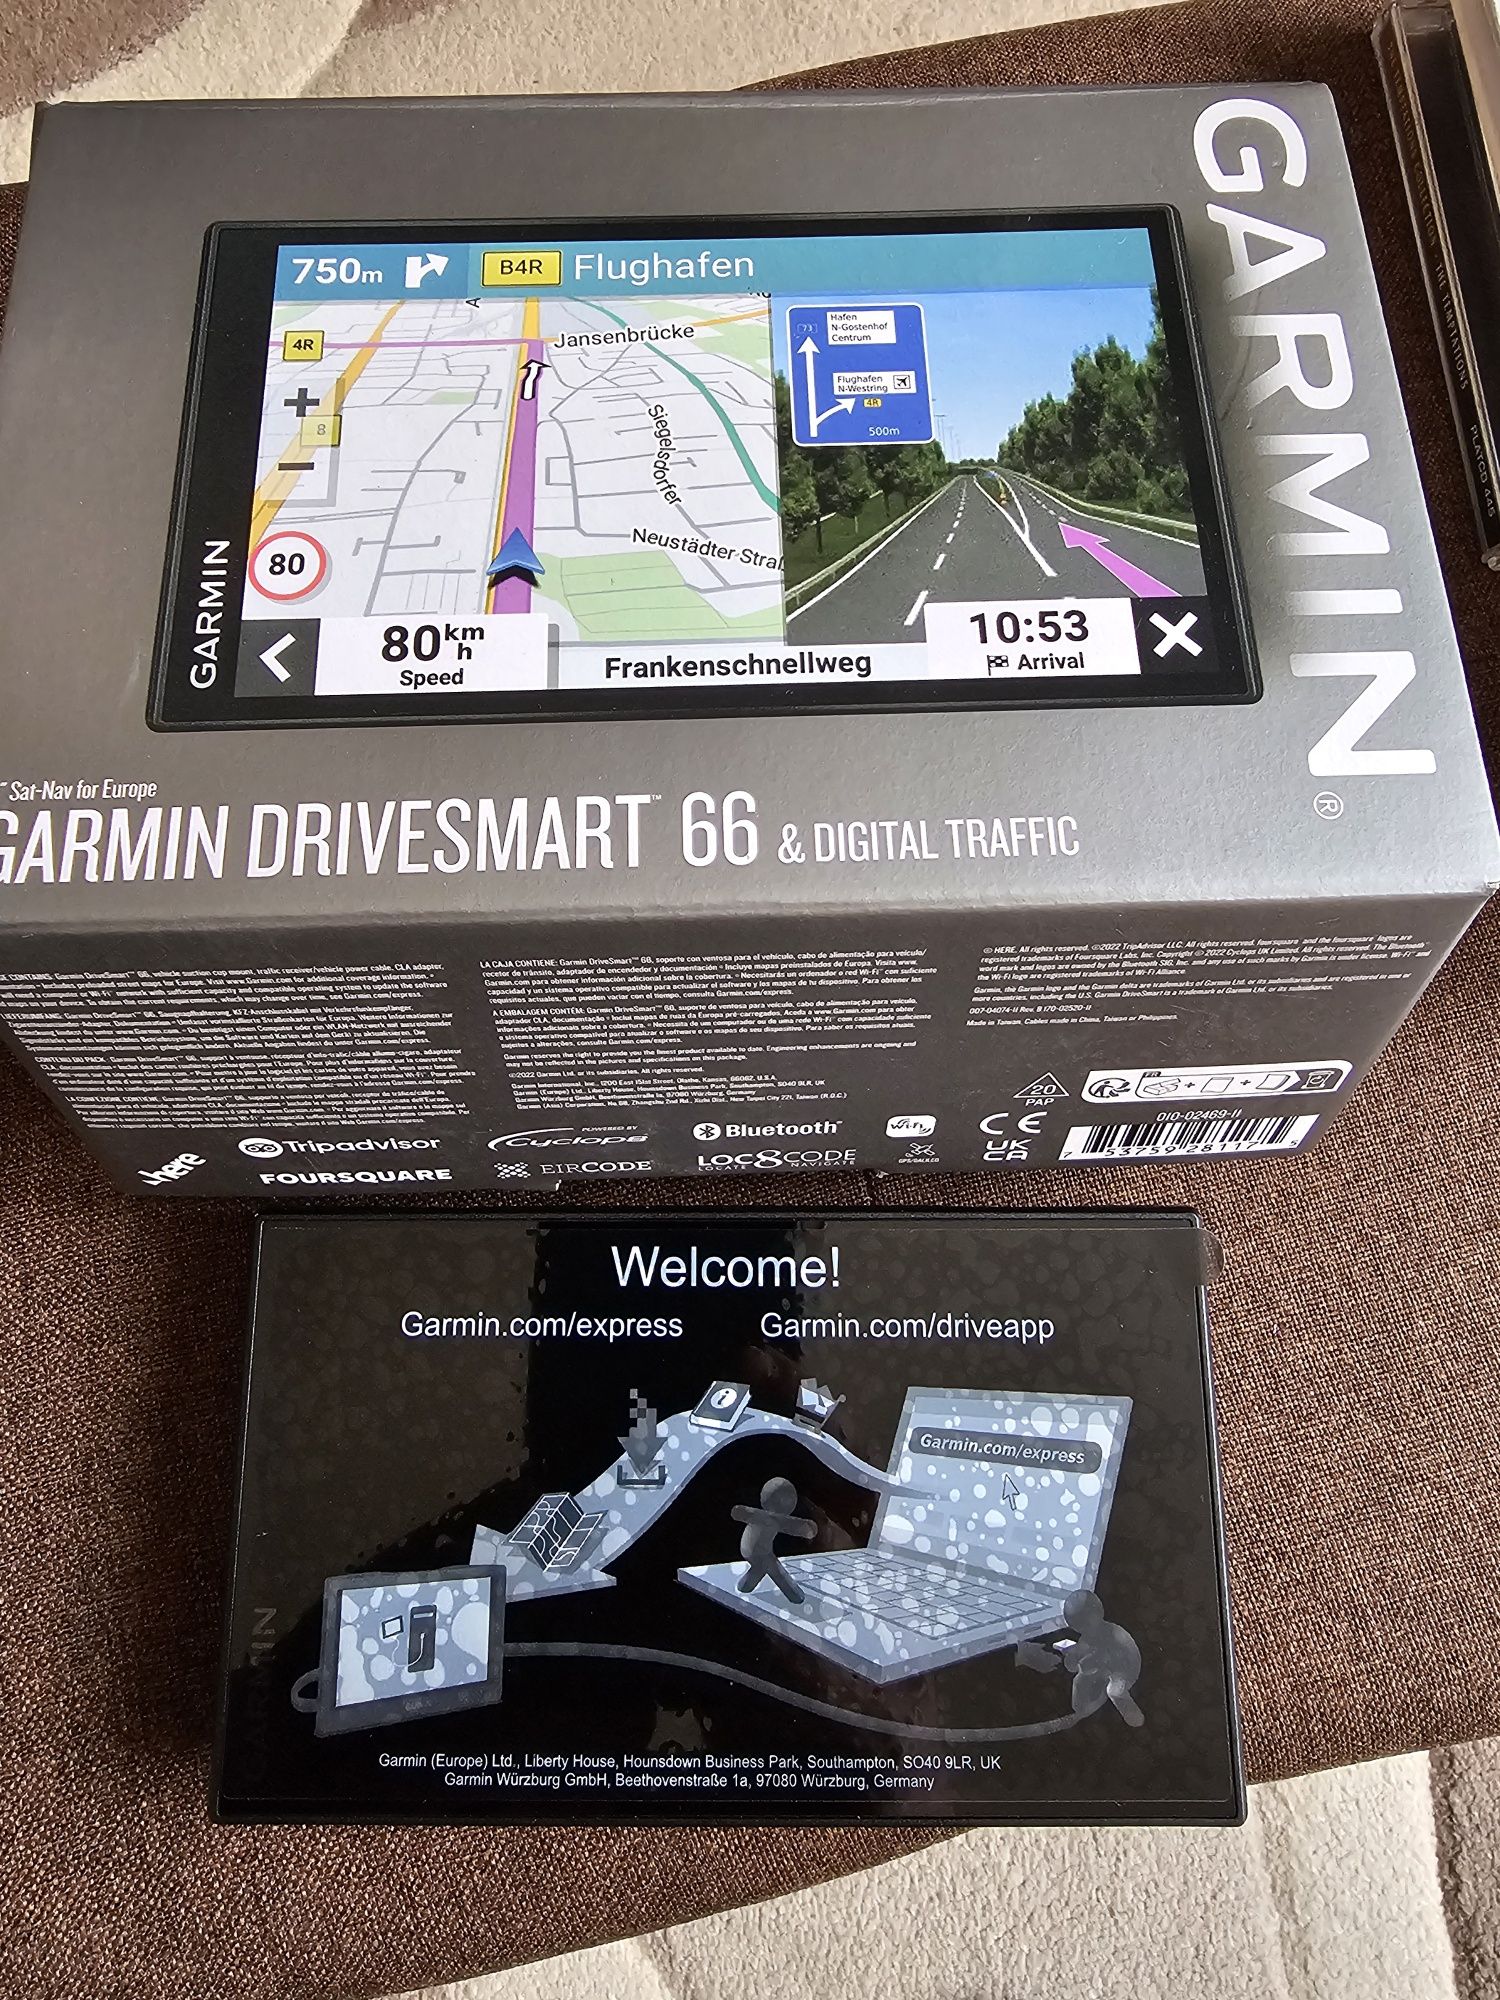 Garmin Drivesmart 66 digital traffic - Навигация